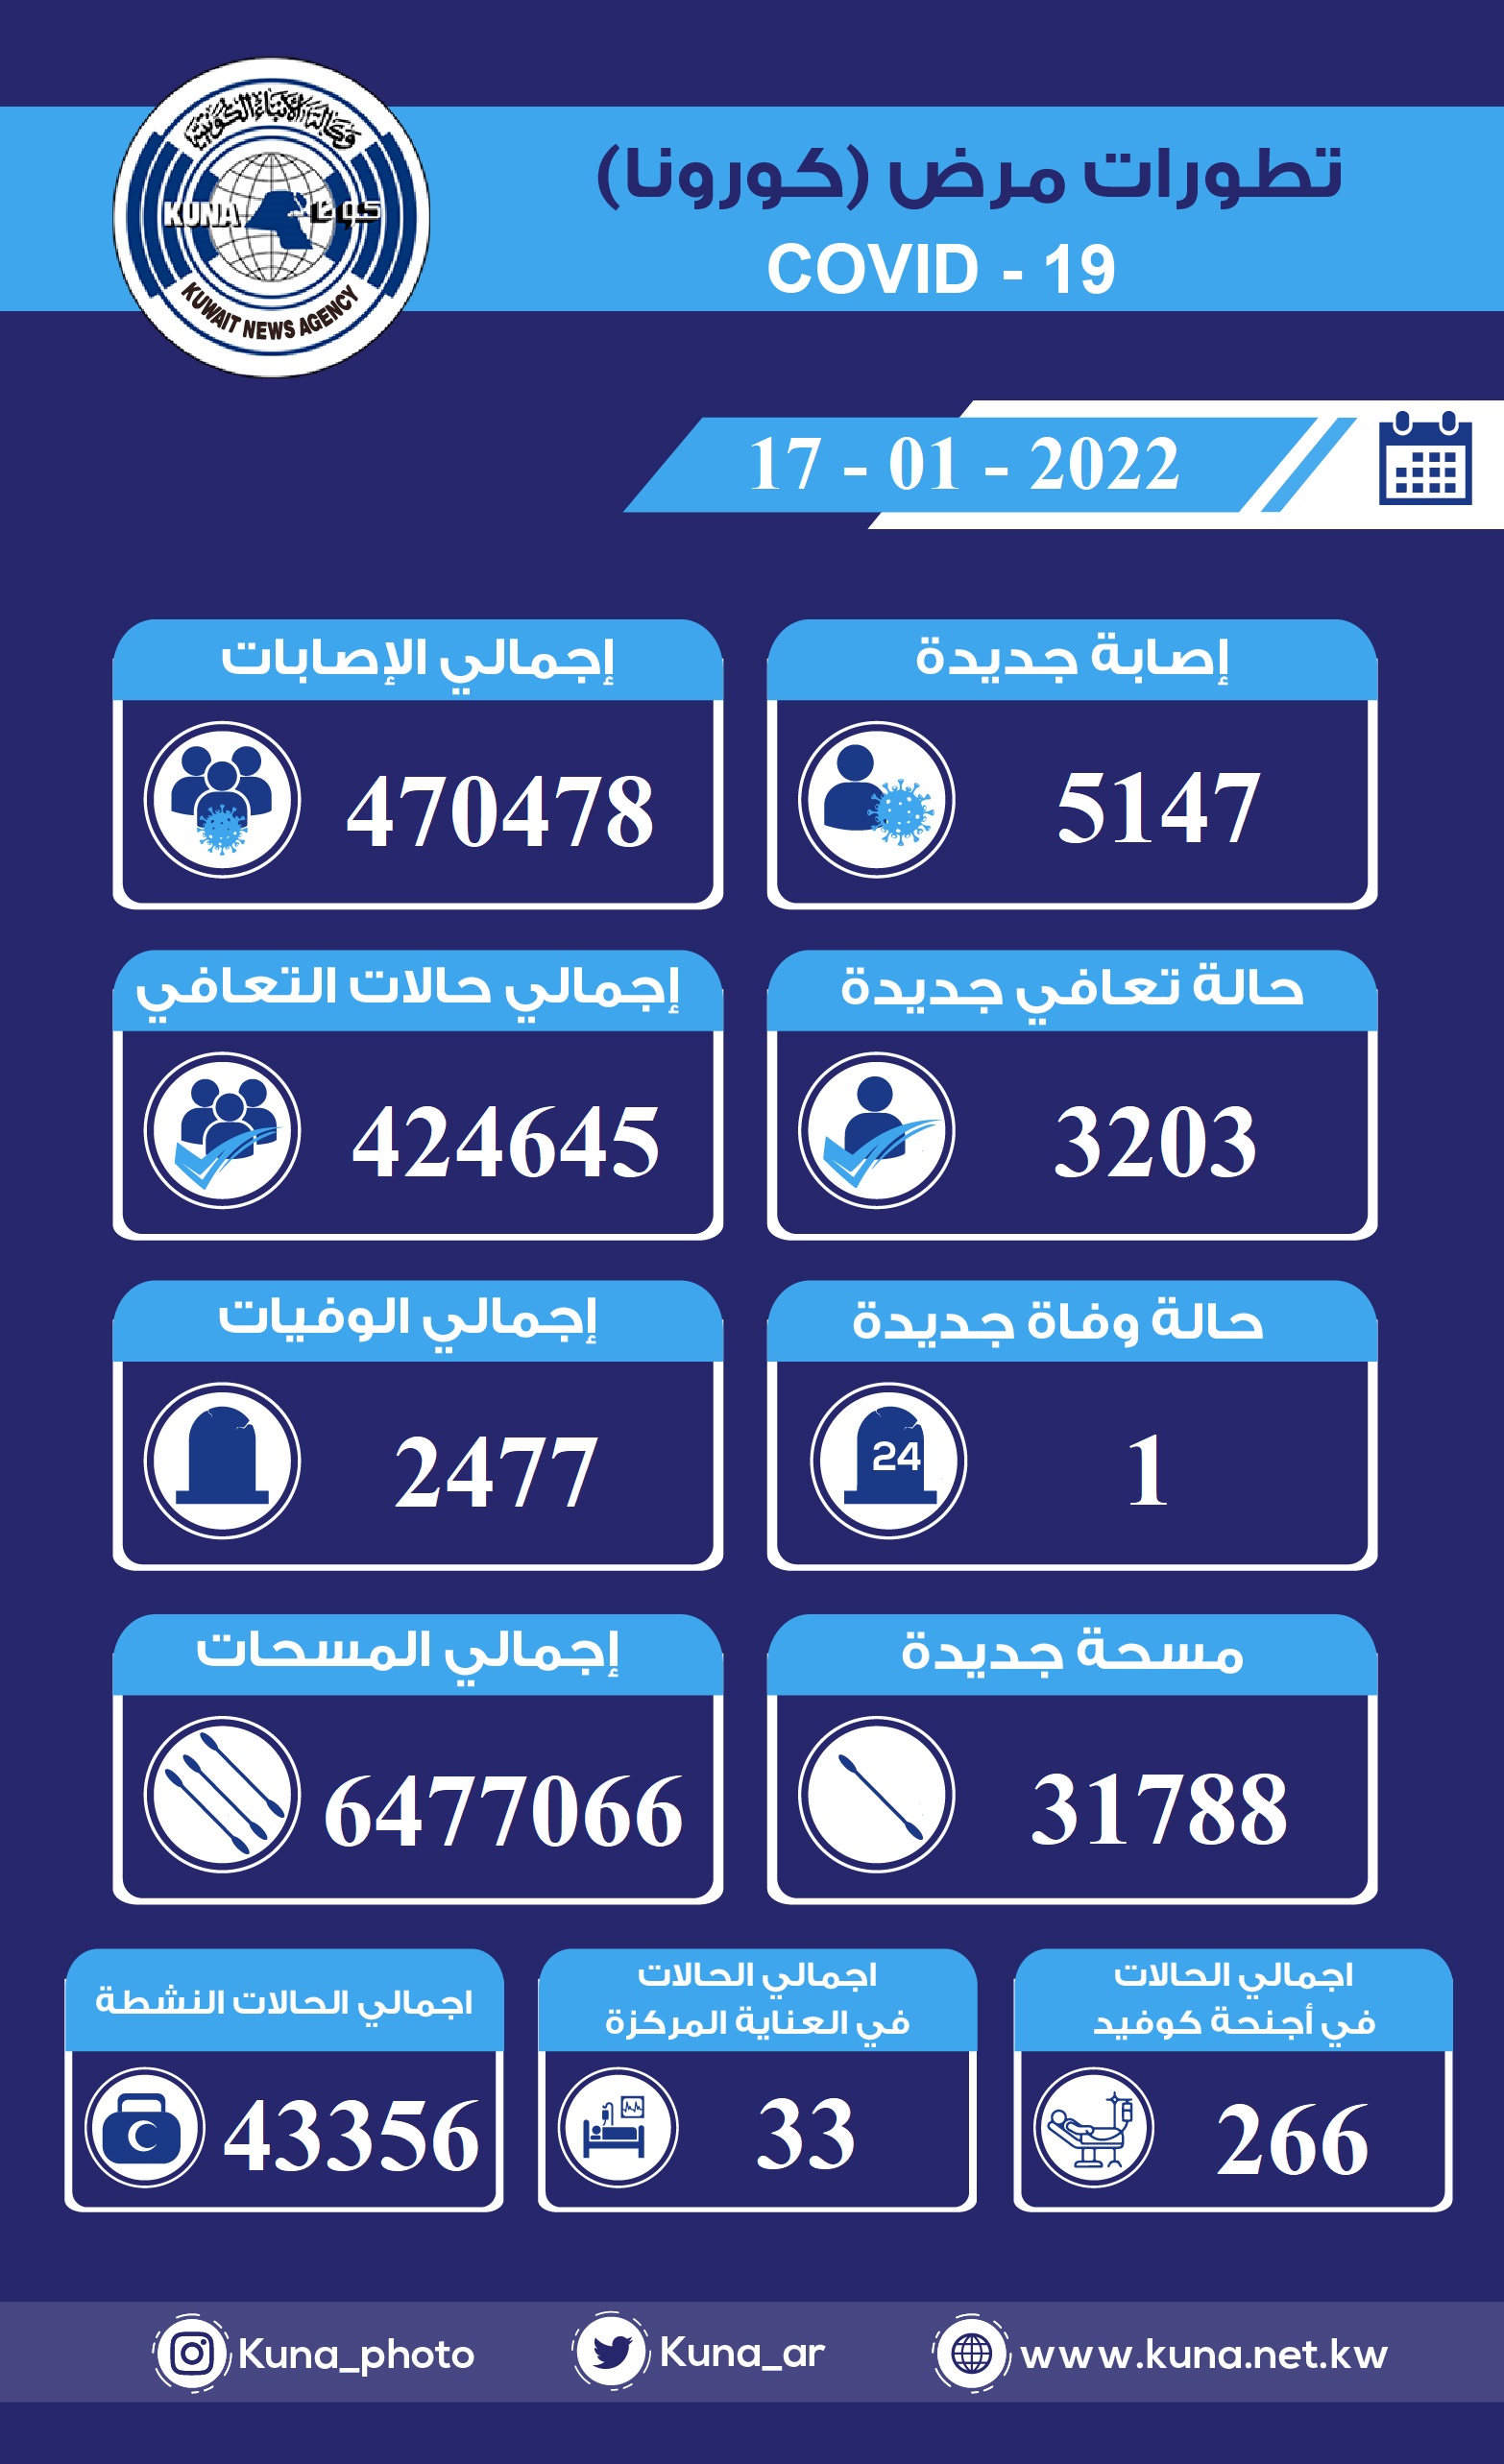 (الصحة) الكويتية: 5147 إصابة جديدة ب(كورونا) وشفاء 3203 وتسجيل حالة وفاة خلال الساعات ال24 الماضية